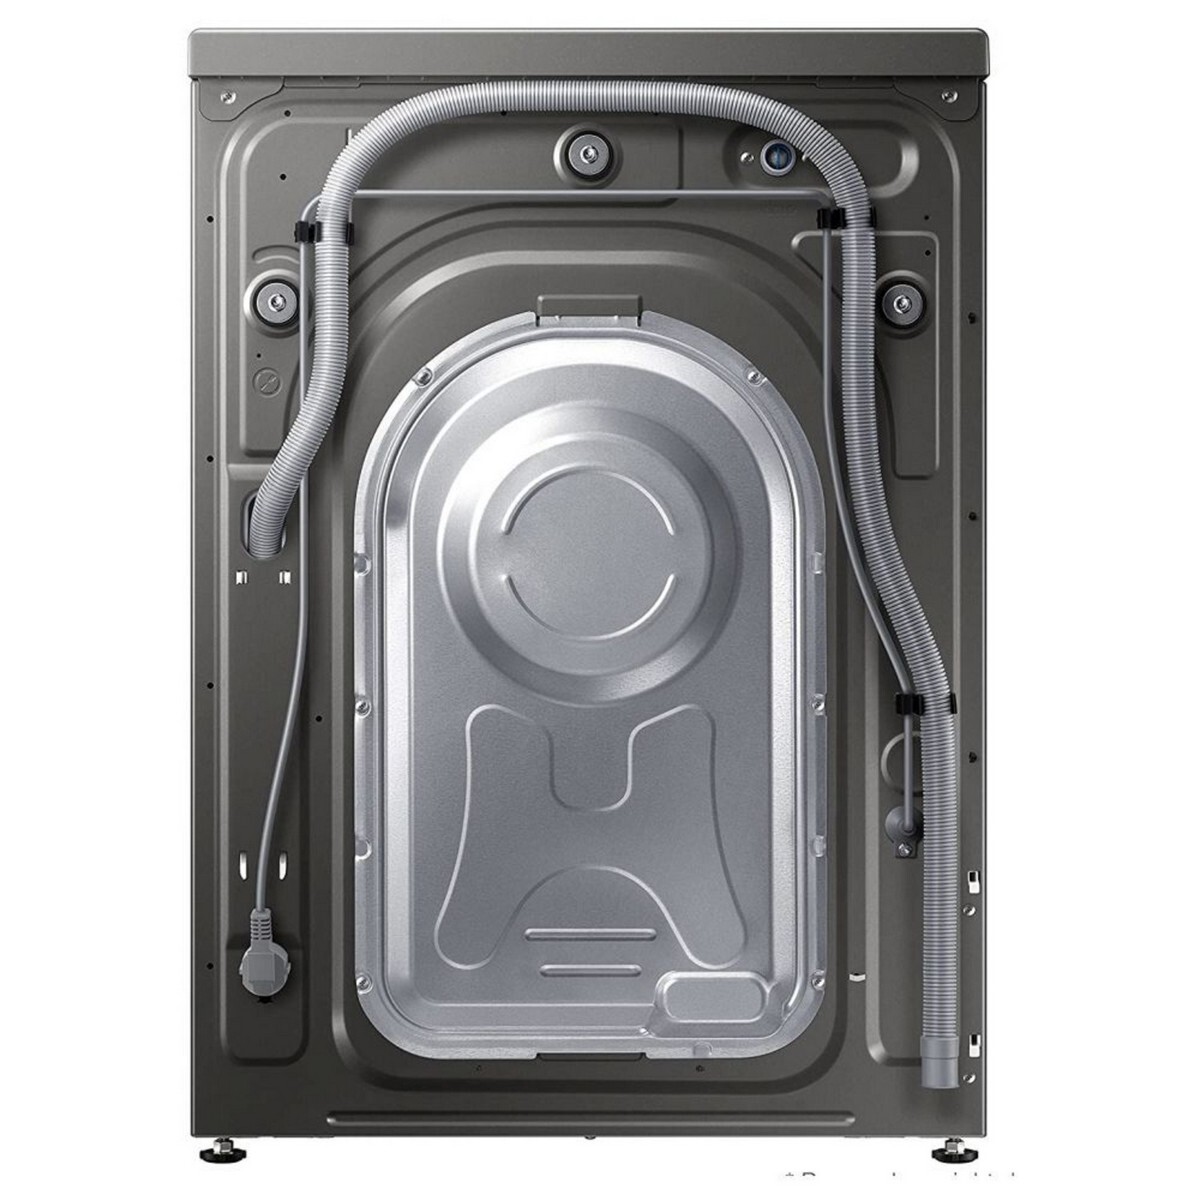 Samsung Front Load Washing Machine WW90T4040CX1 9Kg